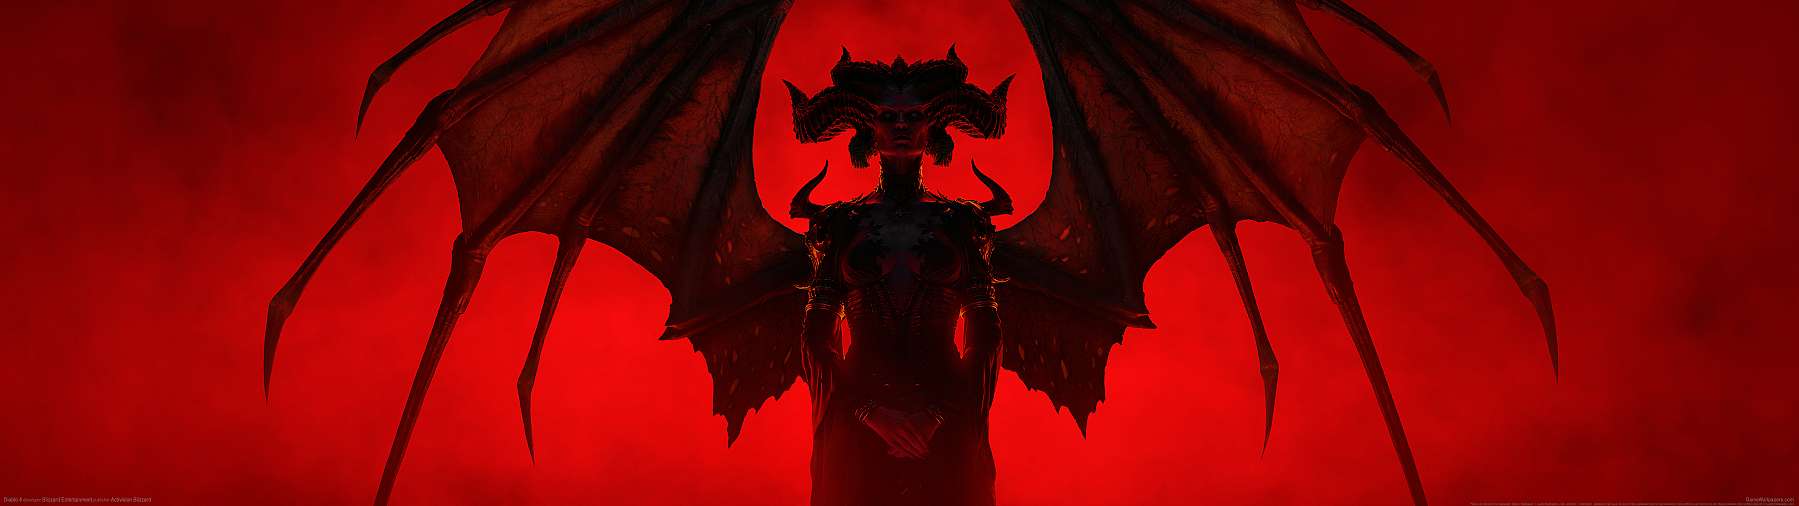 Diablo 4 superwide fond d'écran 14